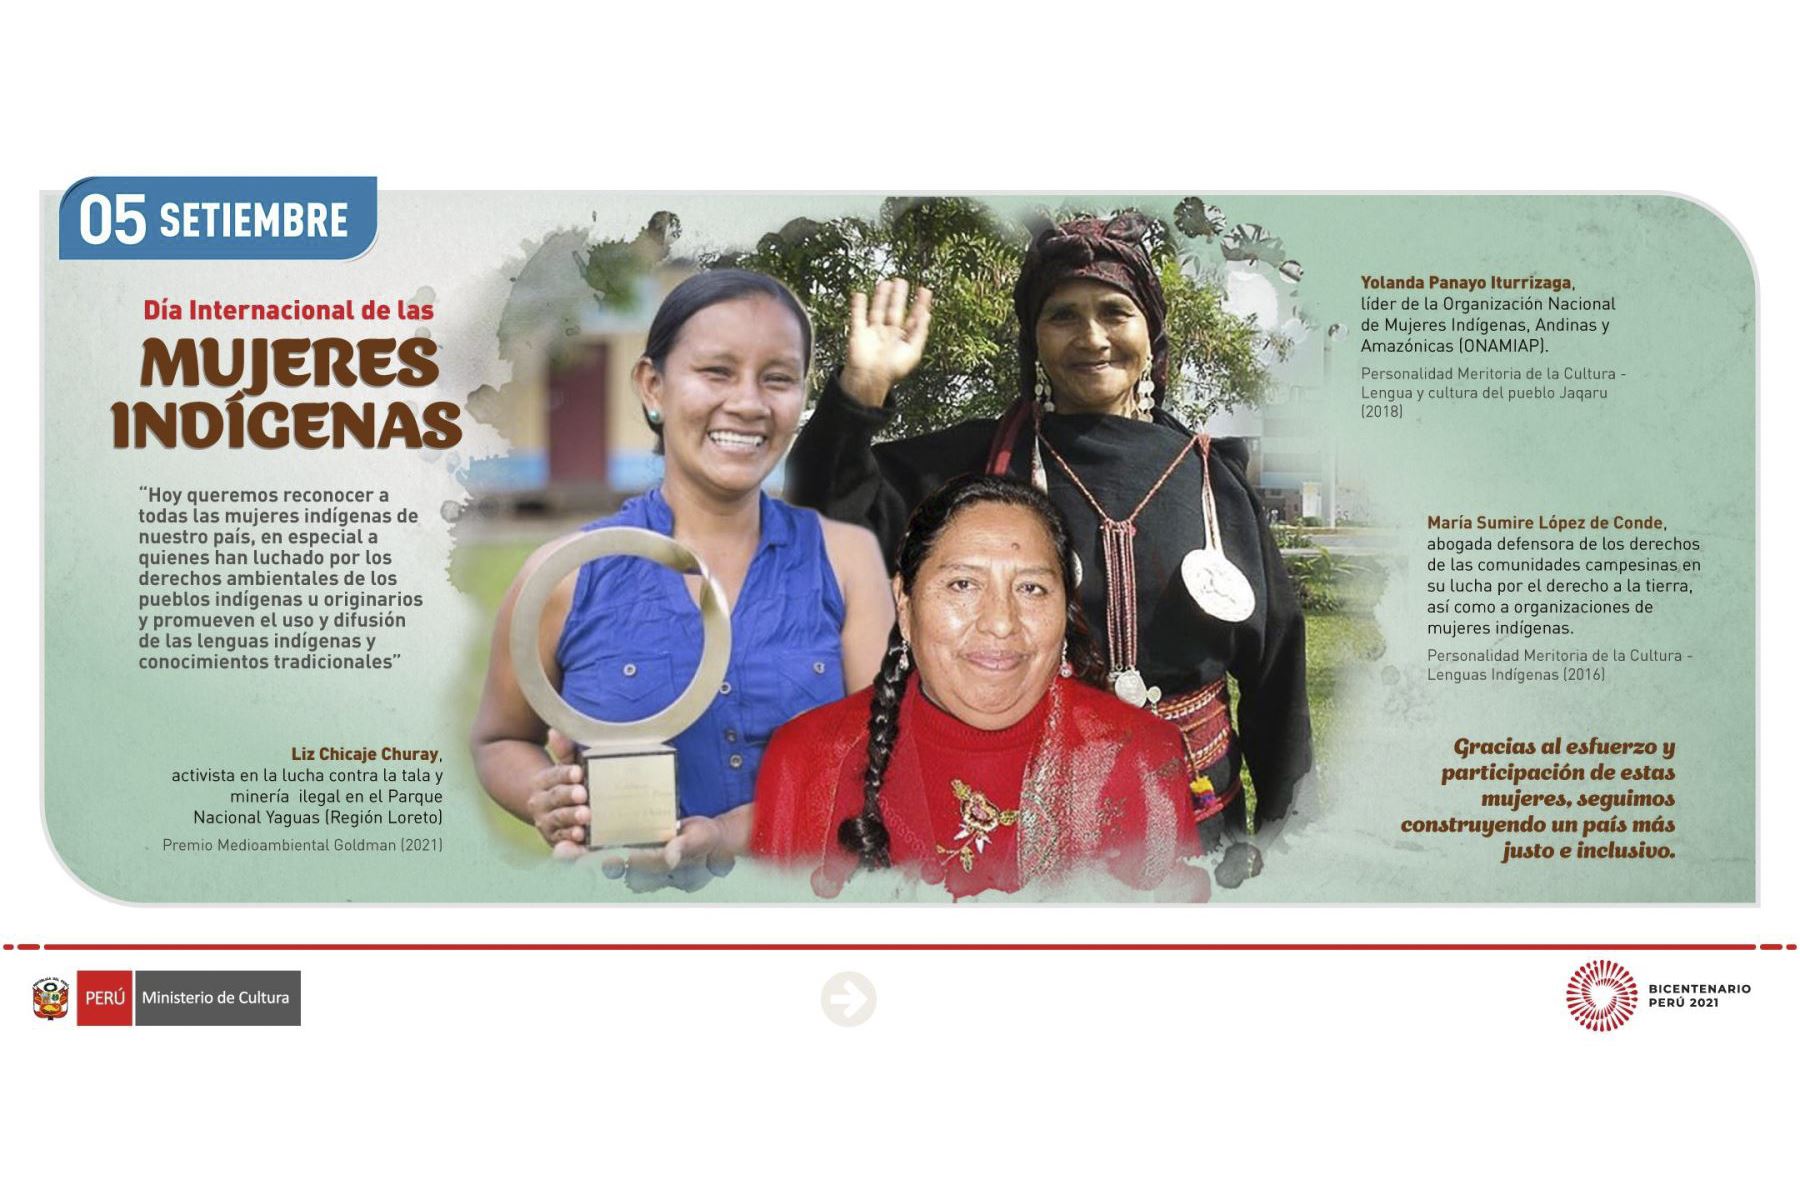 Día de la Mujer Indígena: destacan su rol para construir un país mas justo e inclusivo